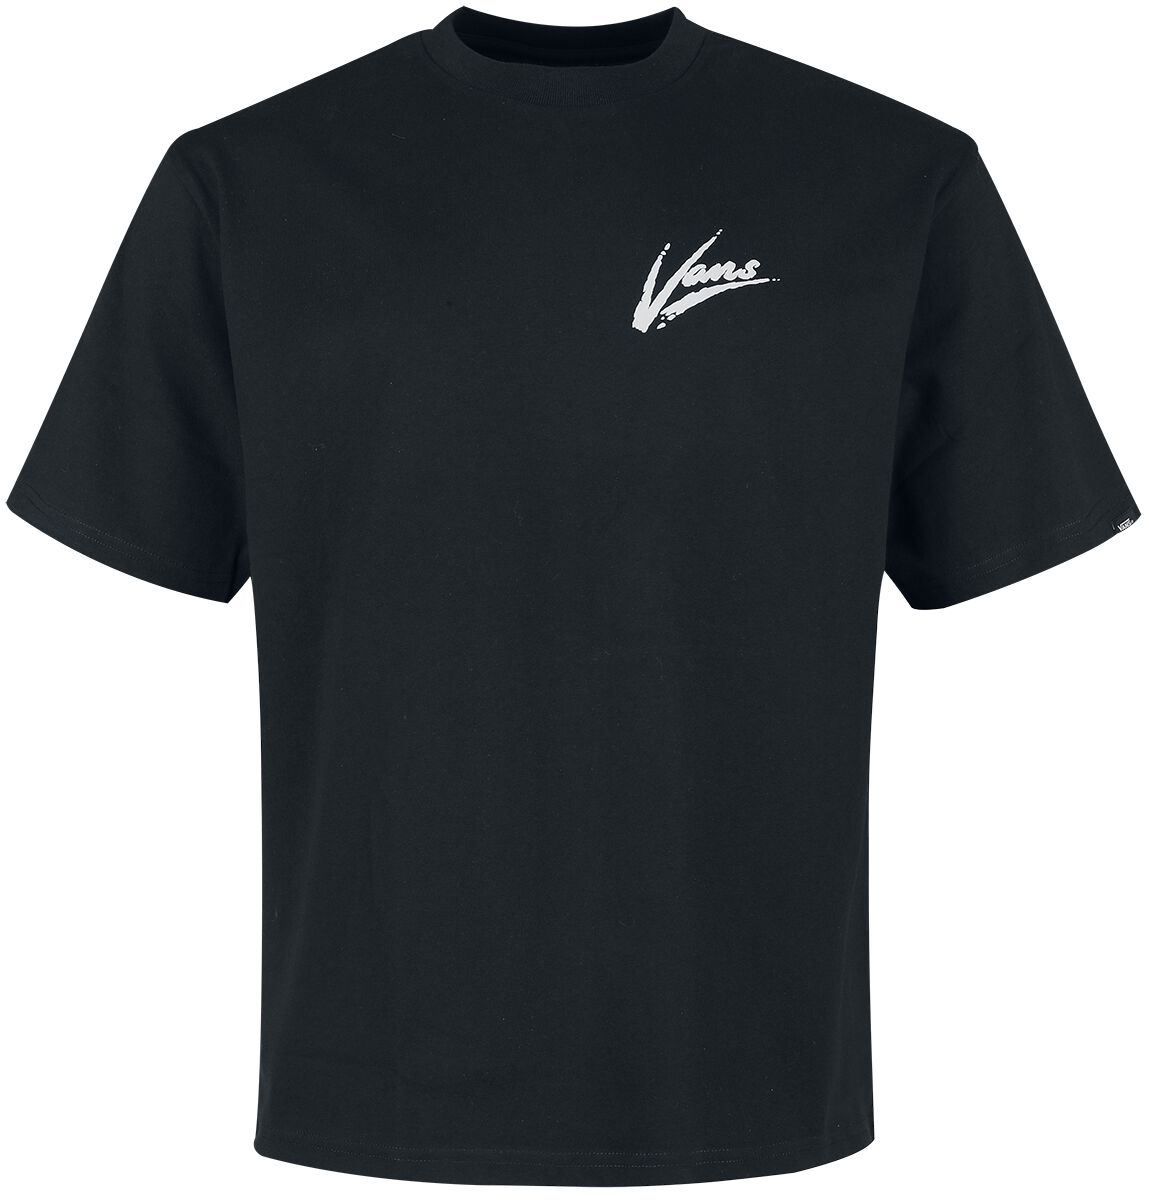 Vans T-Shirt - Dettori Loose - S bis XL - für Männer - Größe S - schwarz